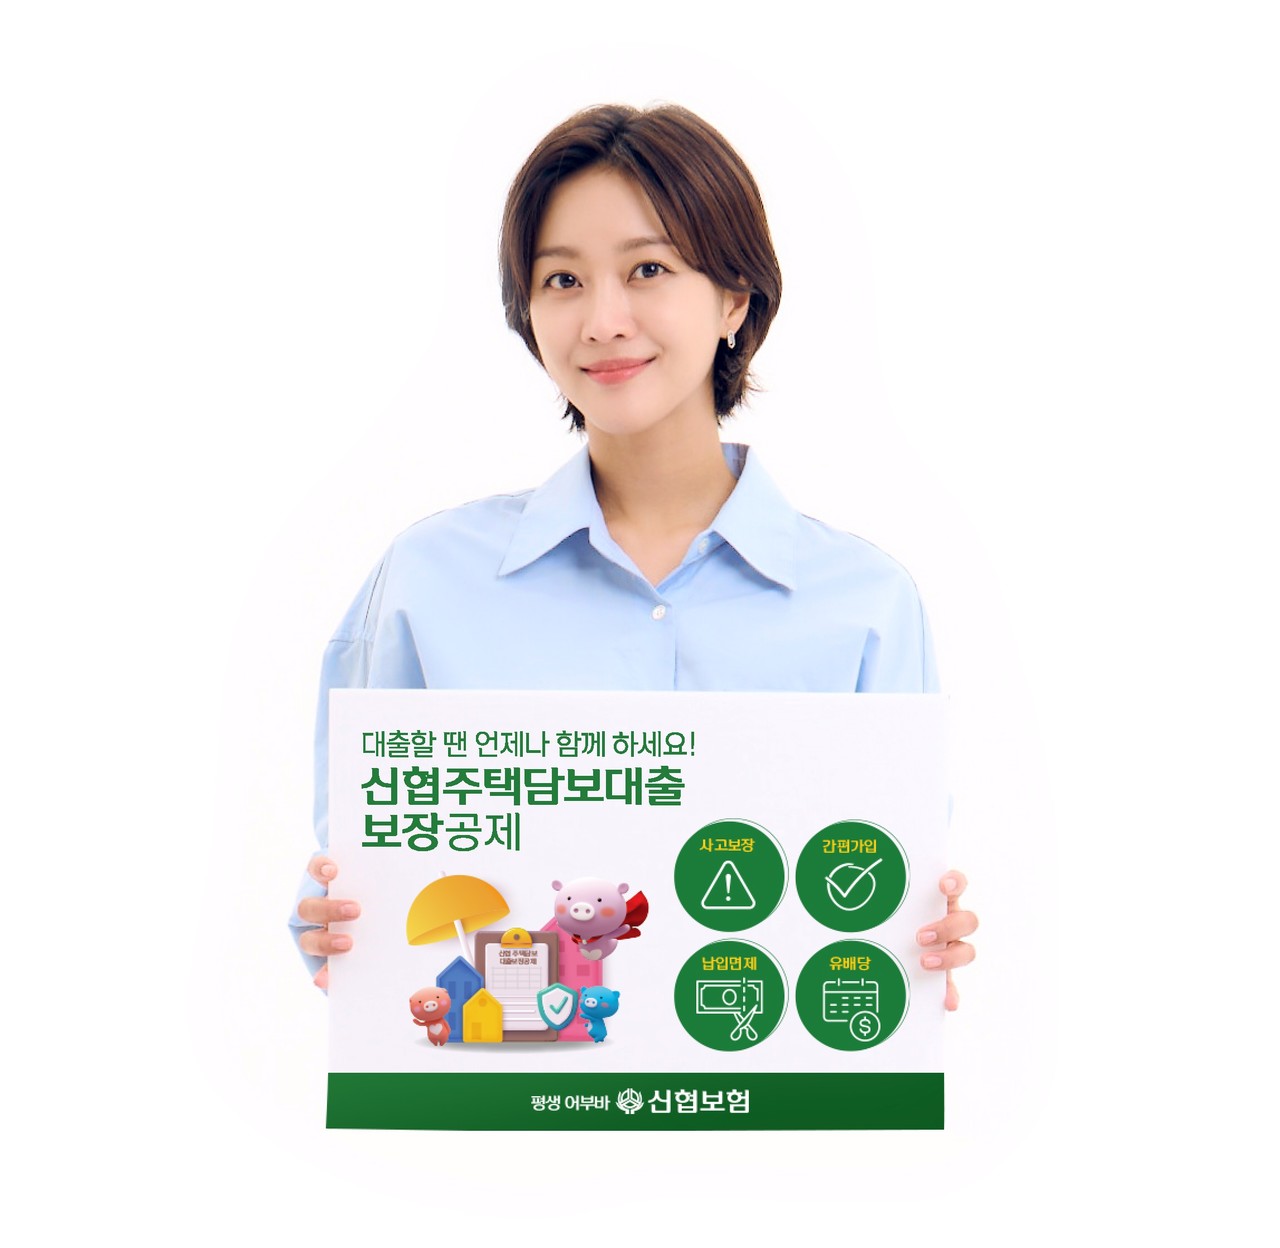 신협중앙회 모델인 배우 조보아가 신상품 ‘신협 주택담보대출보장공제’ 출시를 알리고 있다.